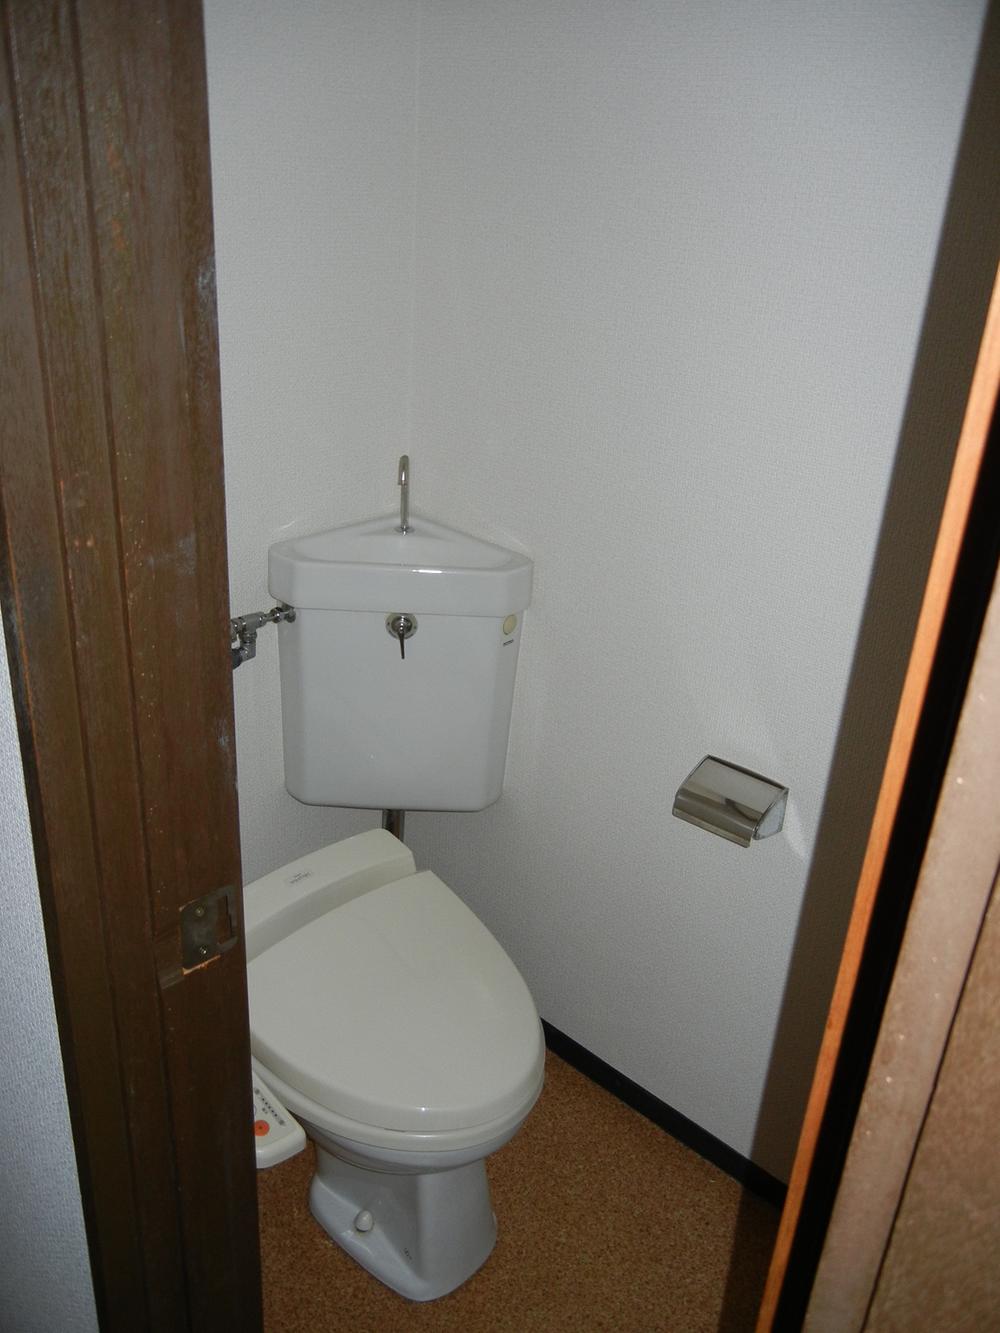 Toilet. Indoor (March 2012) shooting